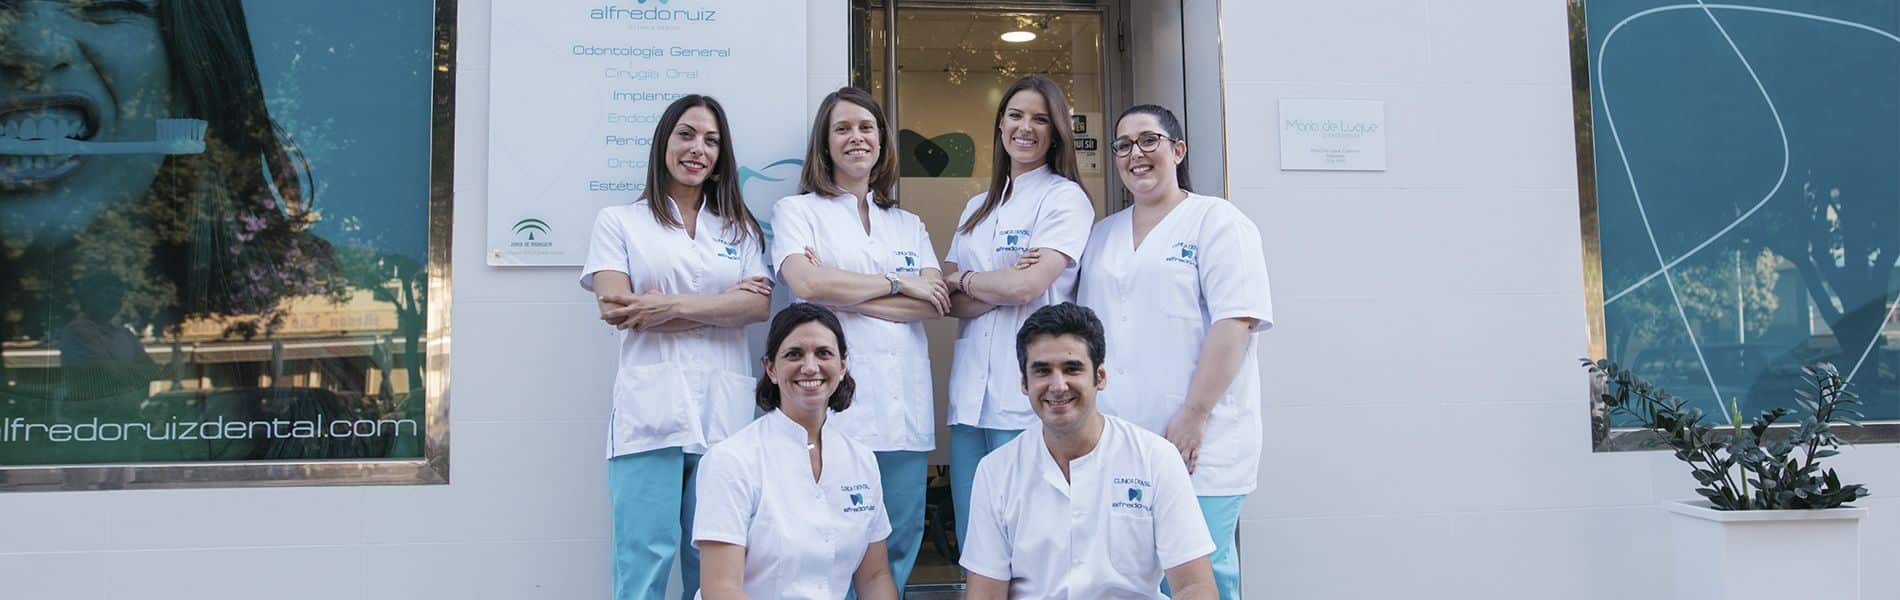 Alfredo Ruiz Dental. Dentistas en Córdoba.